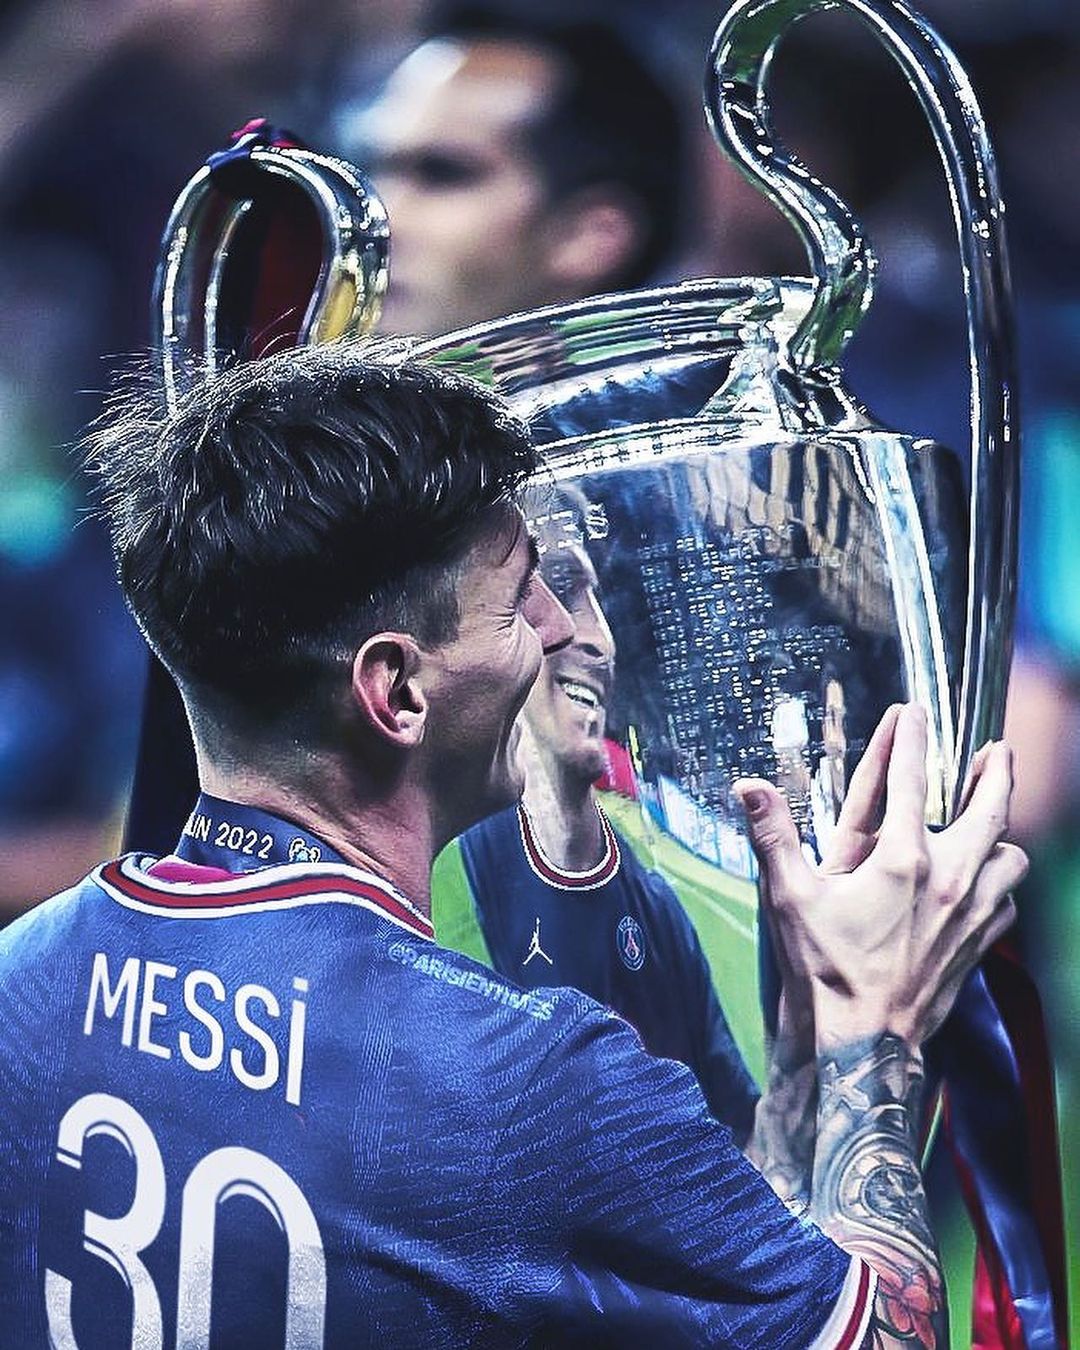 PSG Messi wallpaper sẽ khiến bất kỳ người hâm mộ Paris Saint-Germain hoặc Messi đều phấn khích. Với một bố cục hấp dẫn và đầy sáng tạo, bạn sẽ không thể rời mắt khỏi bức hình này!